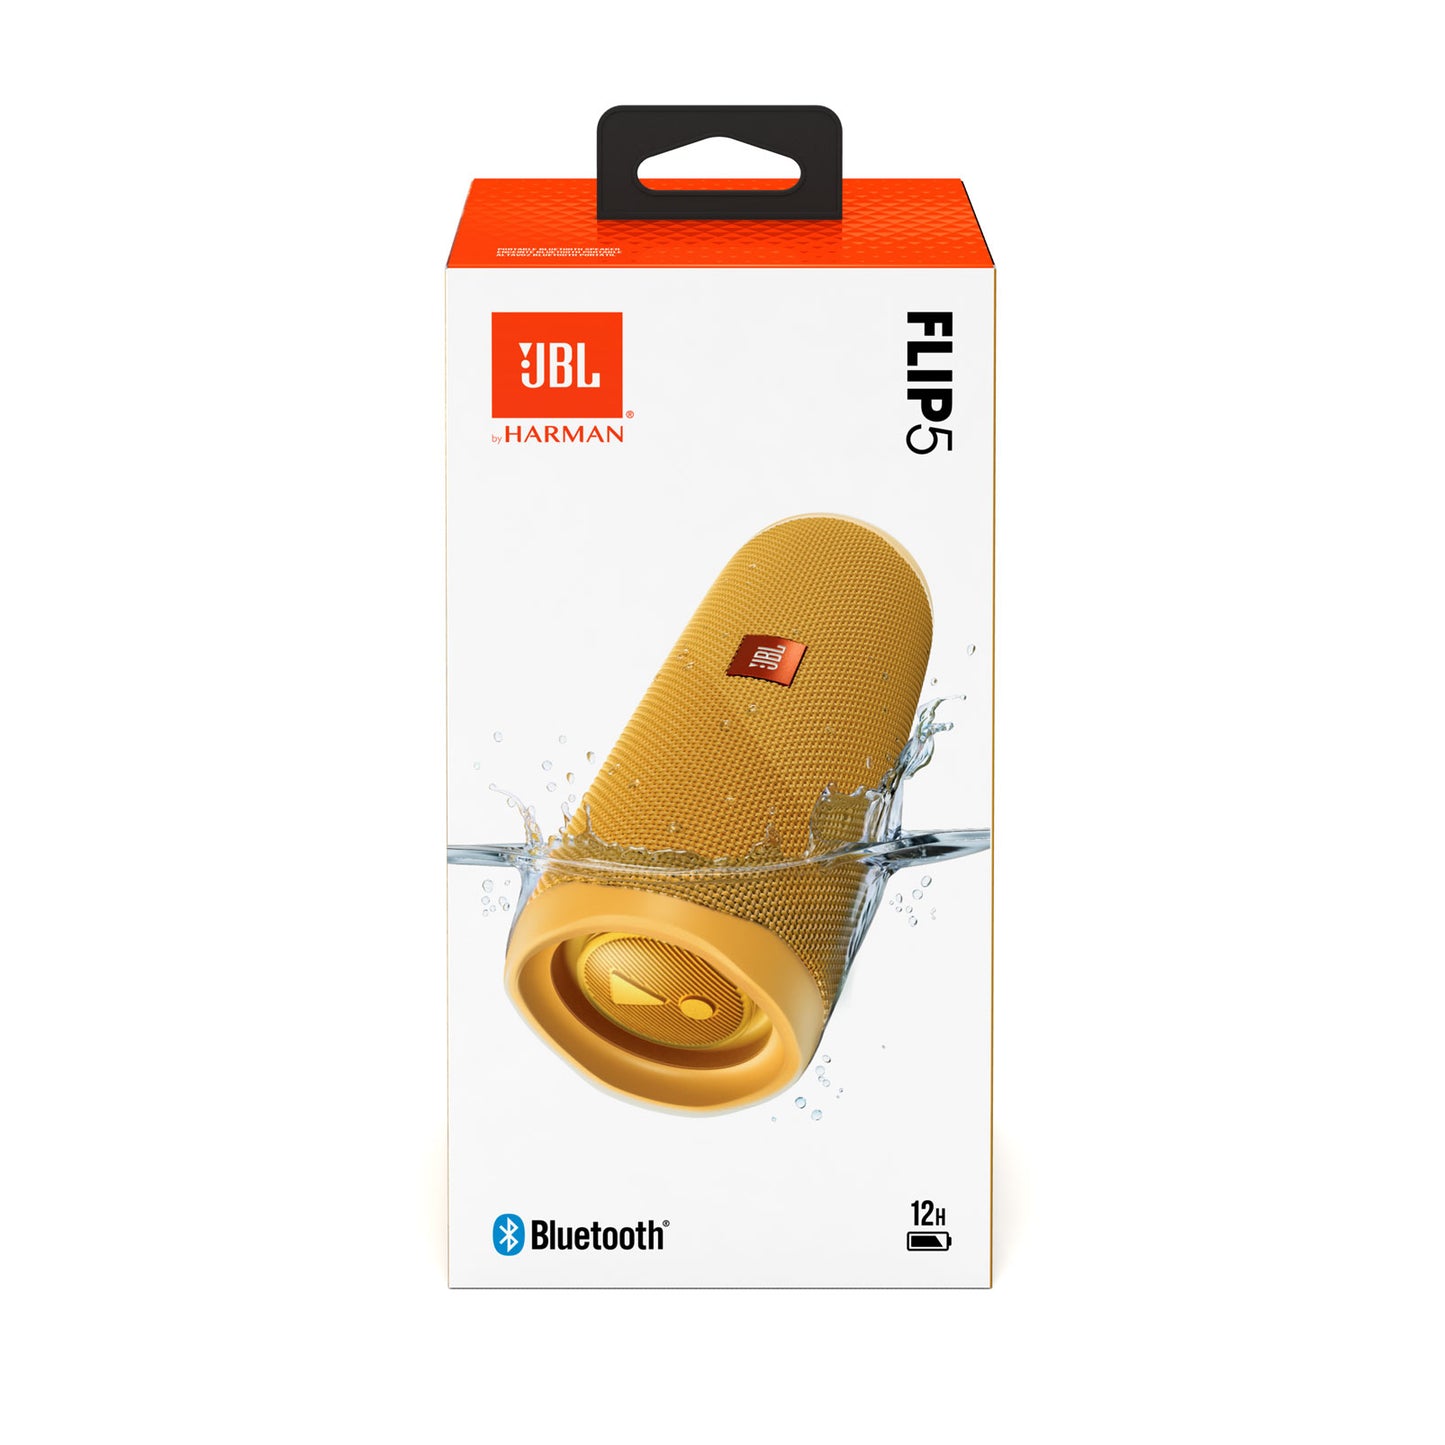 JBL Flip 5 Portable Waterproof Bluetooth Speaker - Mustard Yellow